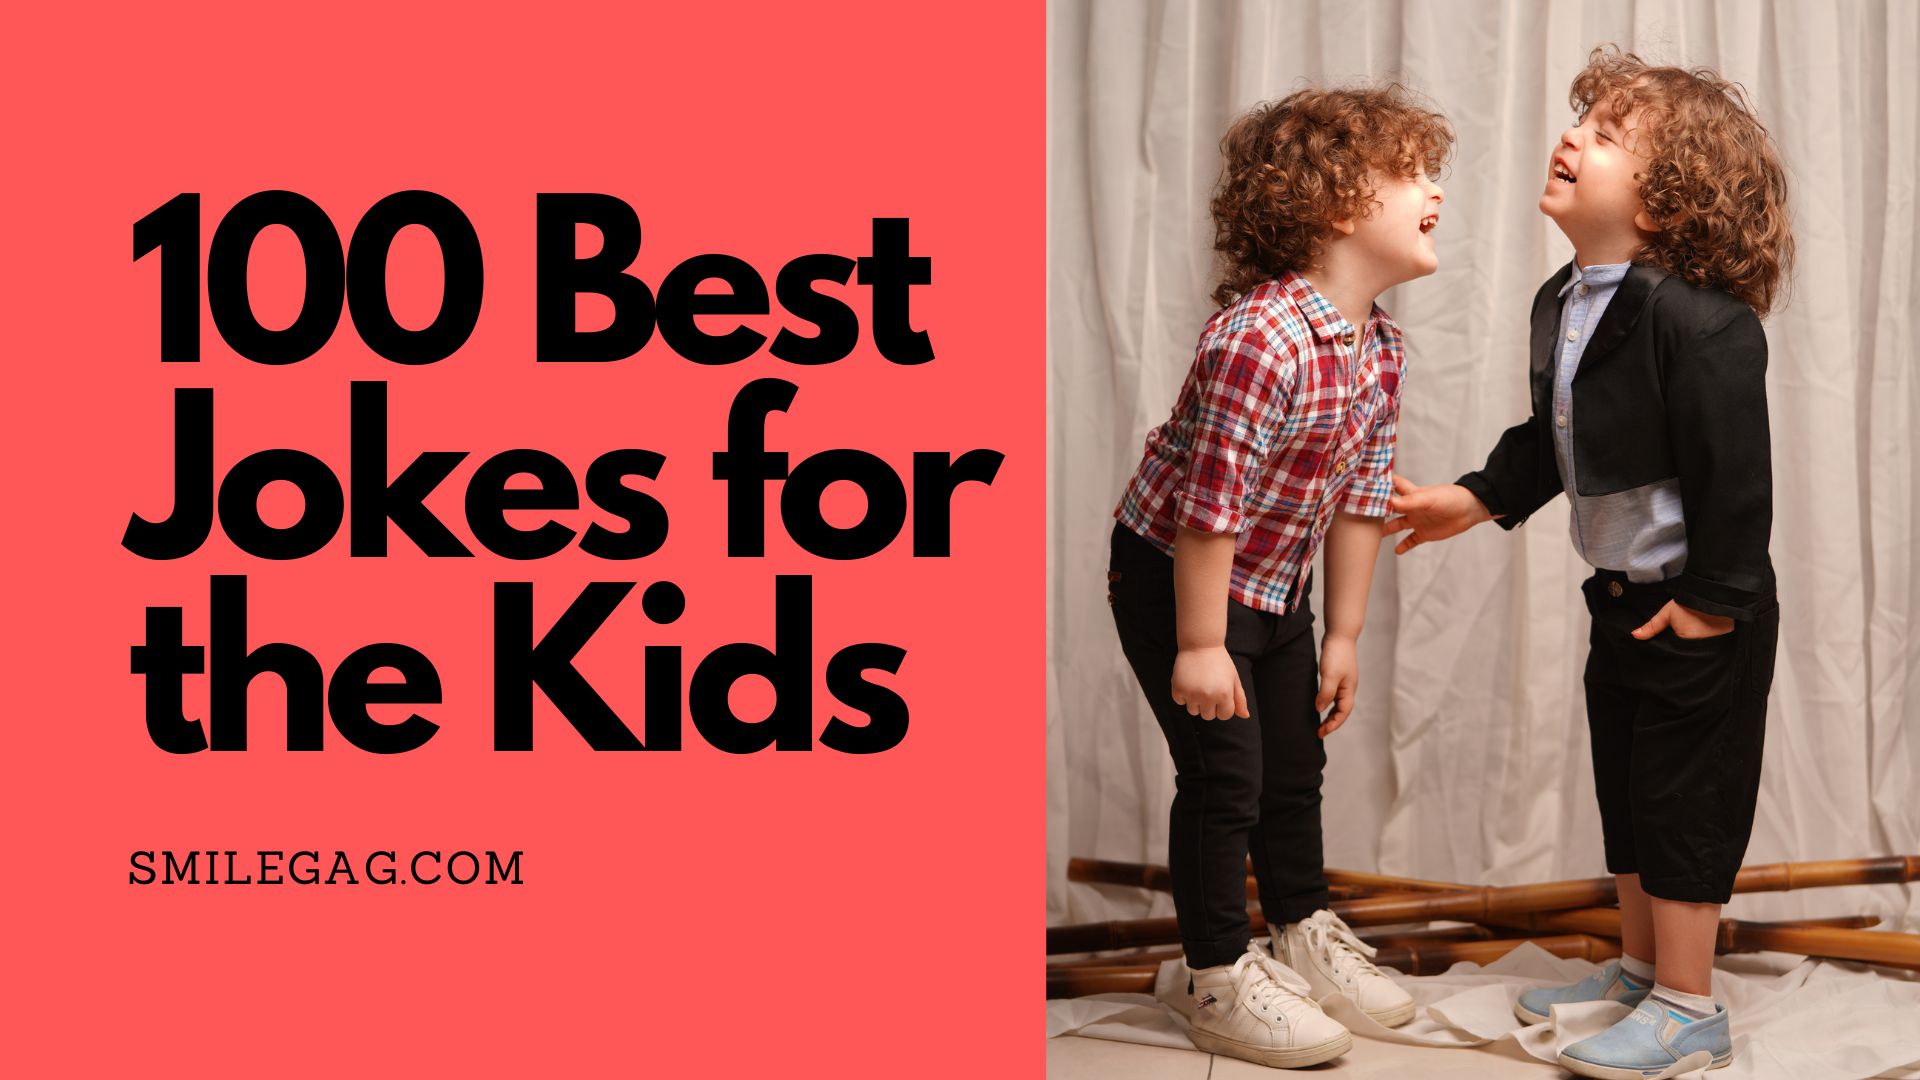 100 Best Jokes for the Kids